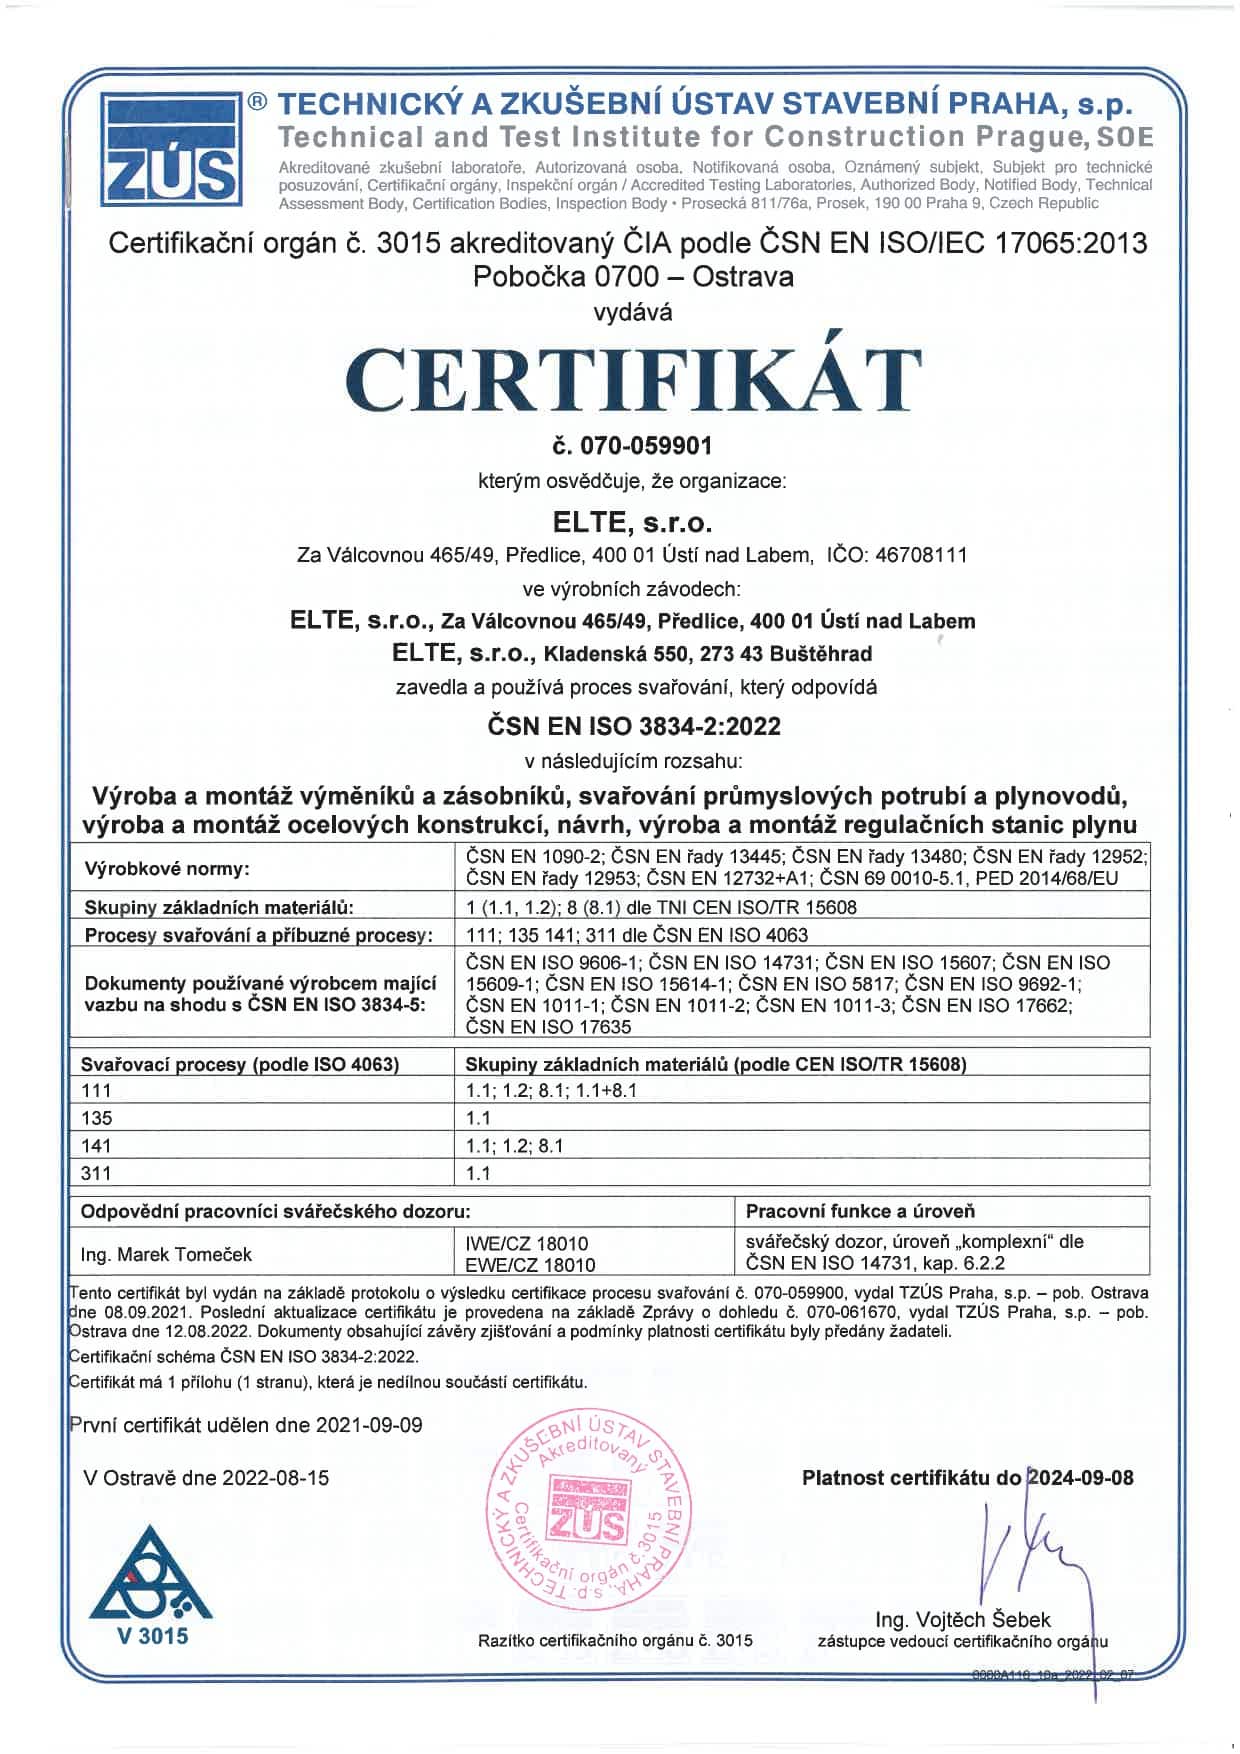 01 - Certifikát_ČSN EN ISO 3834-2:2022